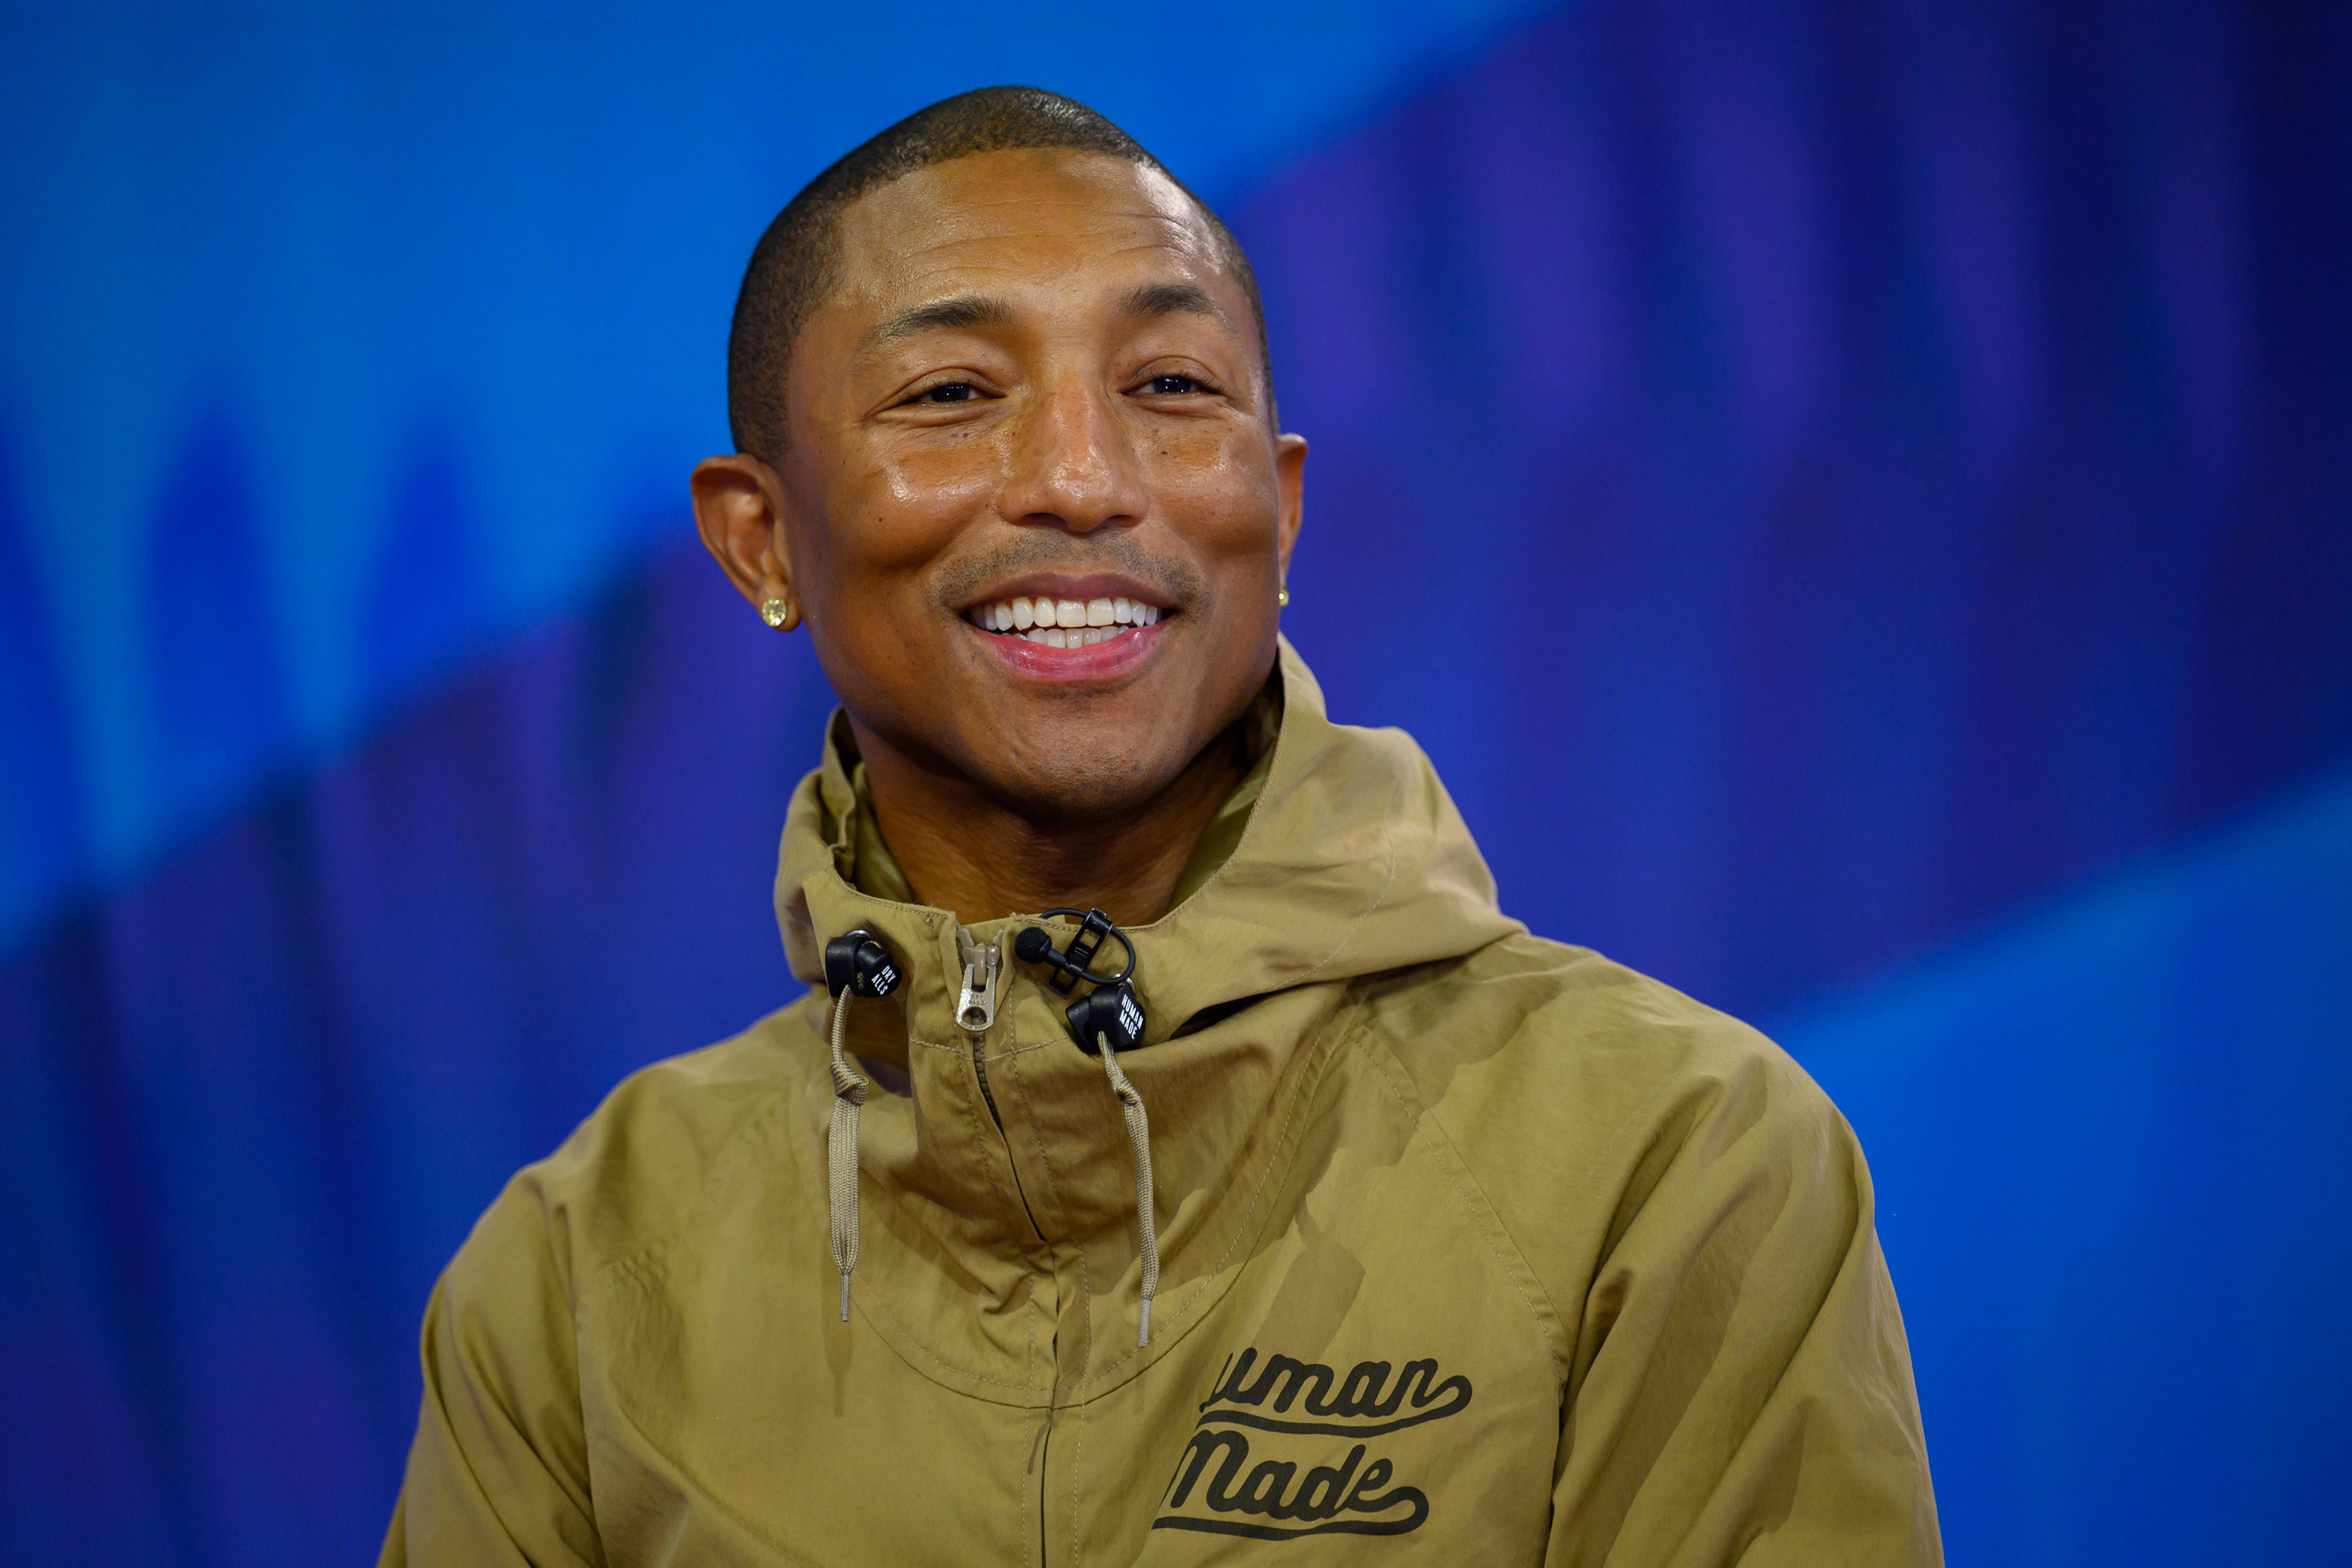 Pharrell smiling